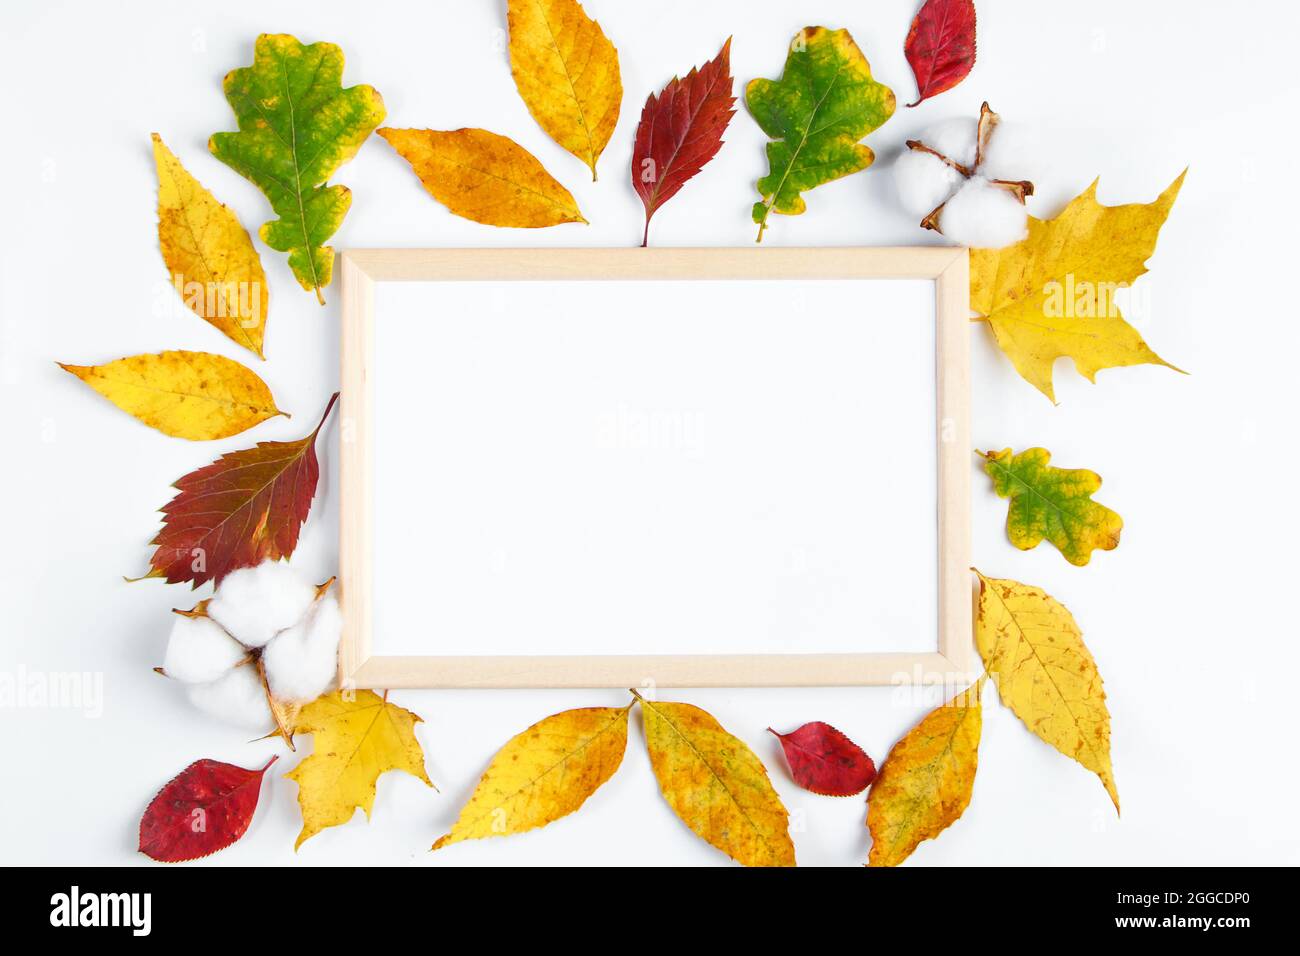 Maquette de cadre vide sur fond blanc et feuilles mortes jaunes. Concept Hello Autumn. Copier l'espace. Banque D'Images